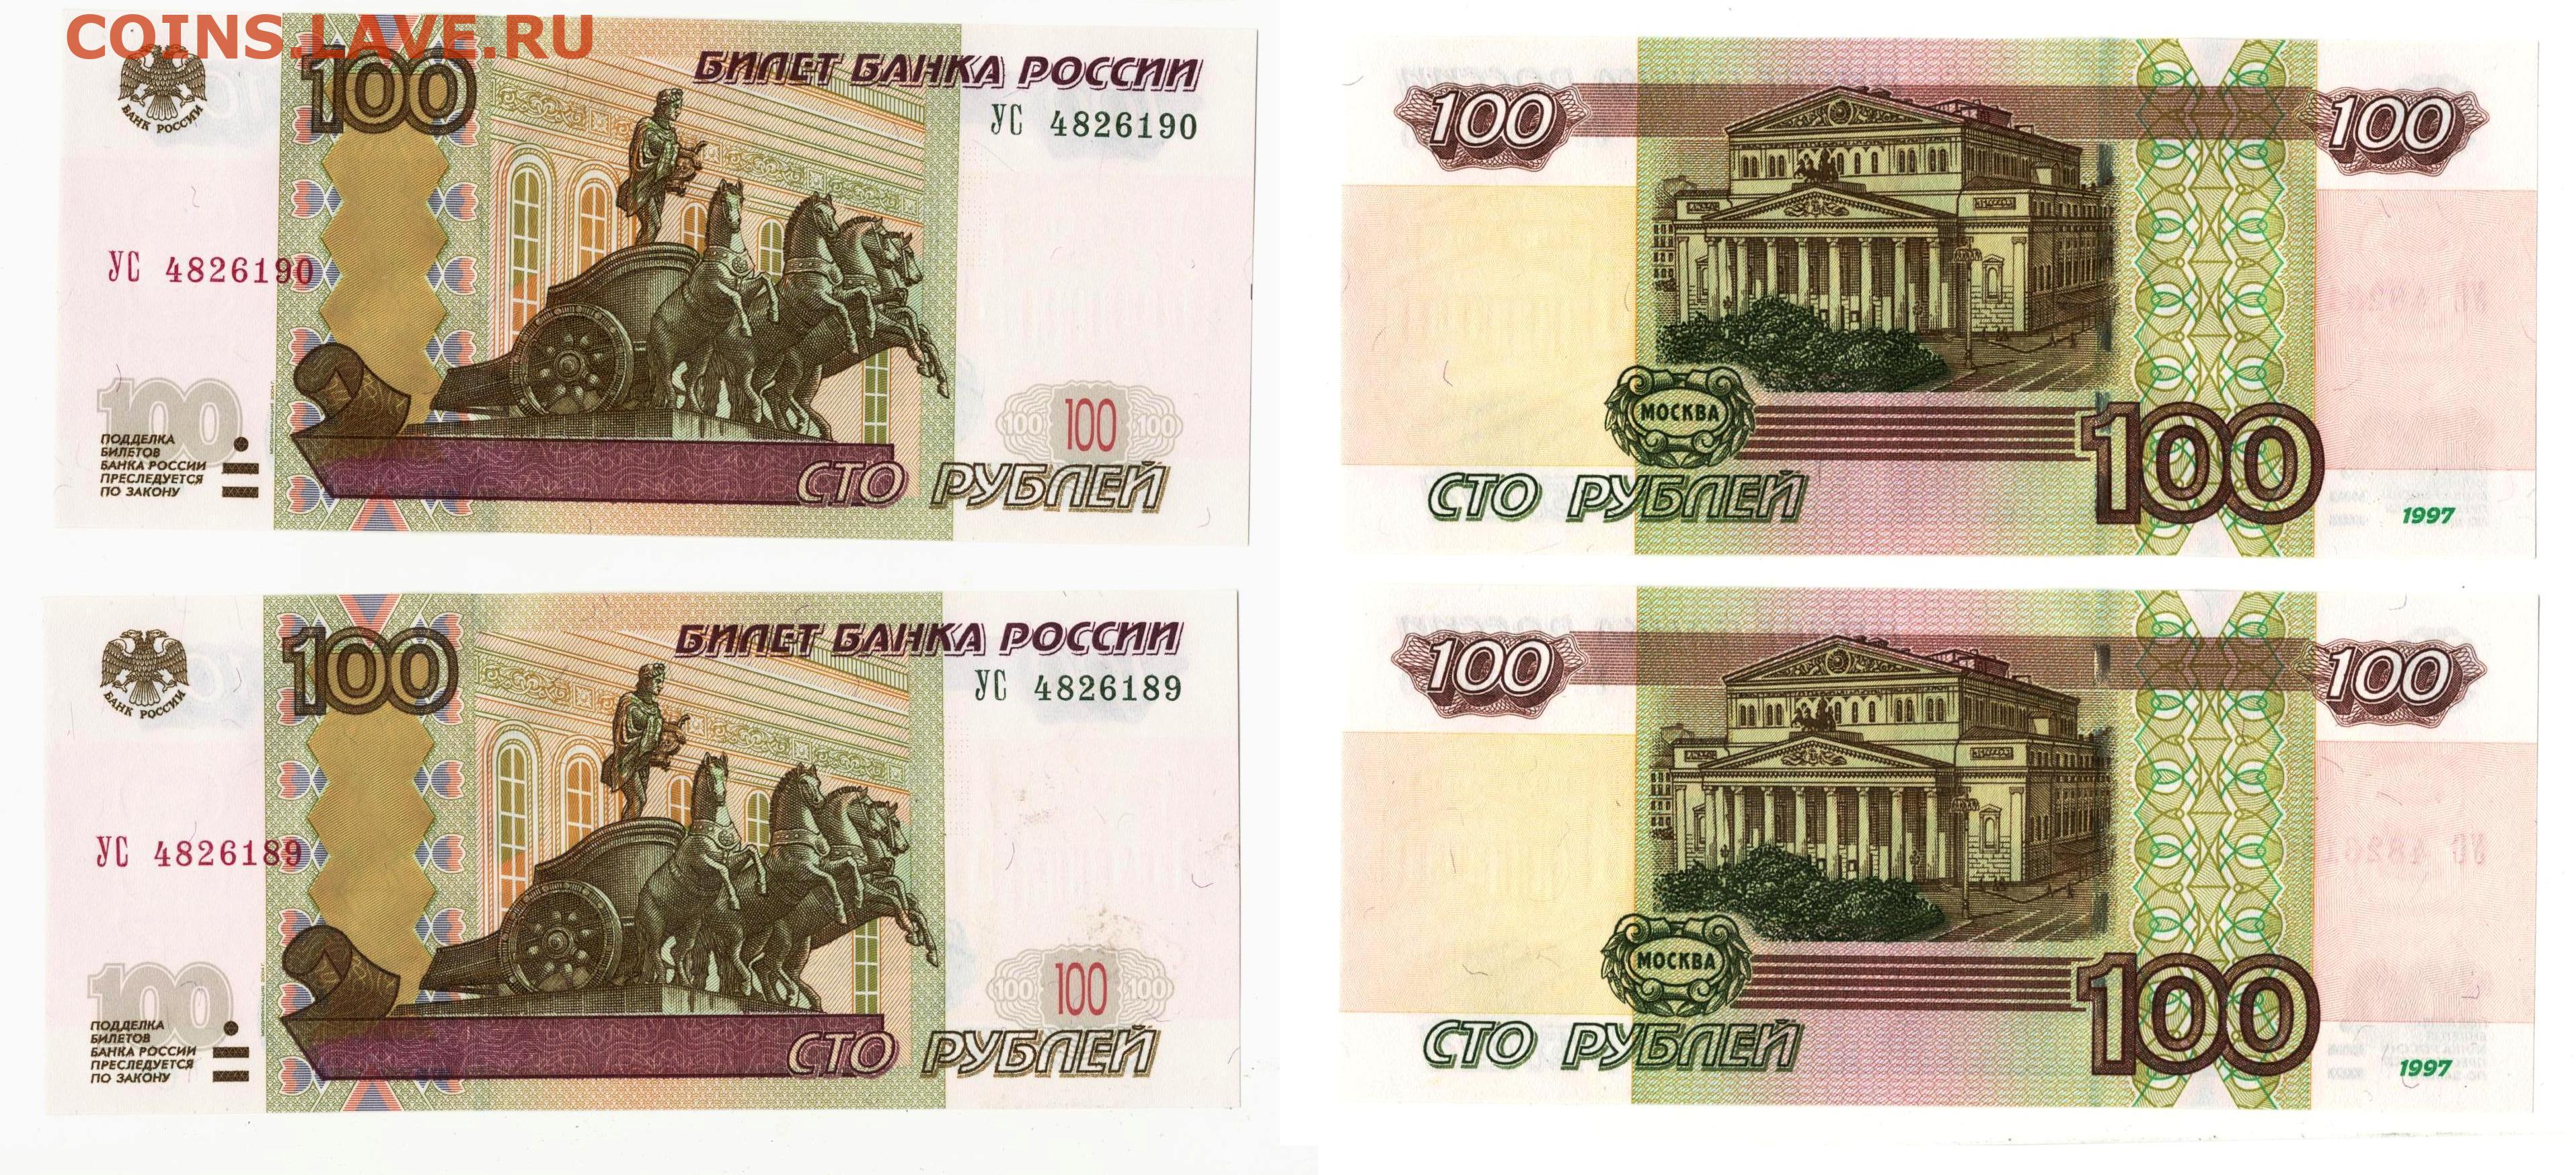 100 сколько рублей в россии. Лицевая сторона 100 рублей.